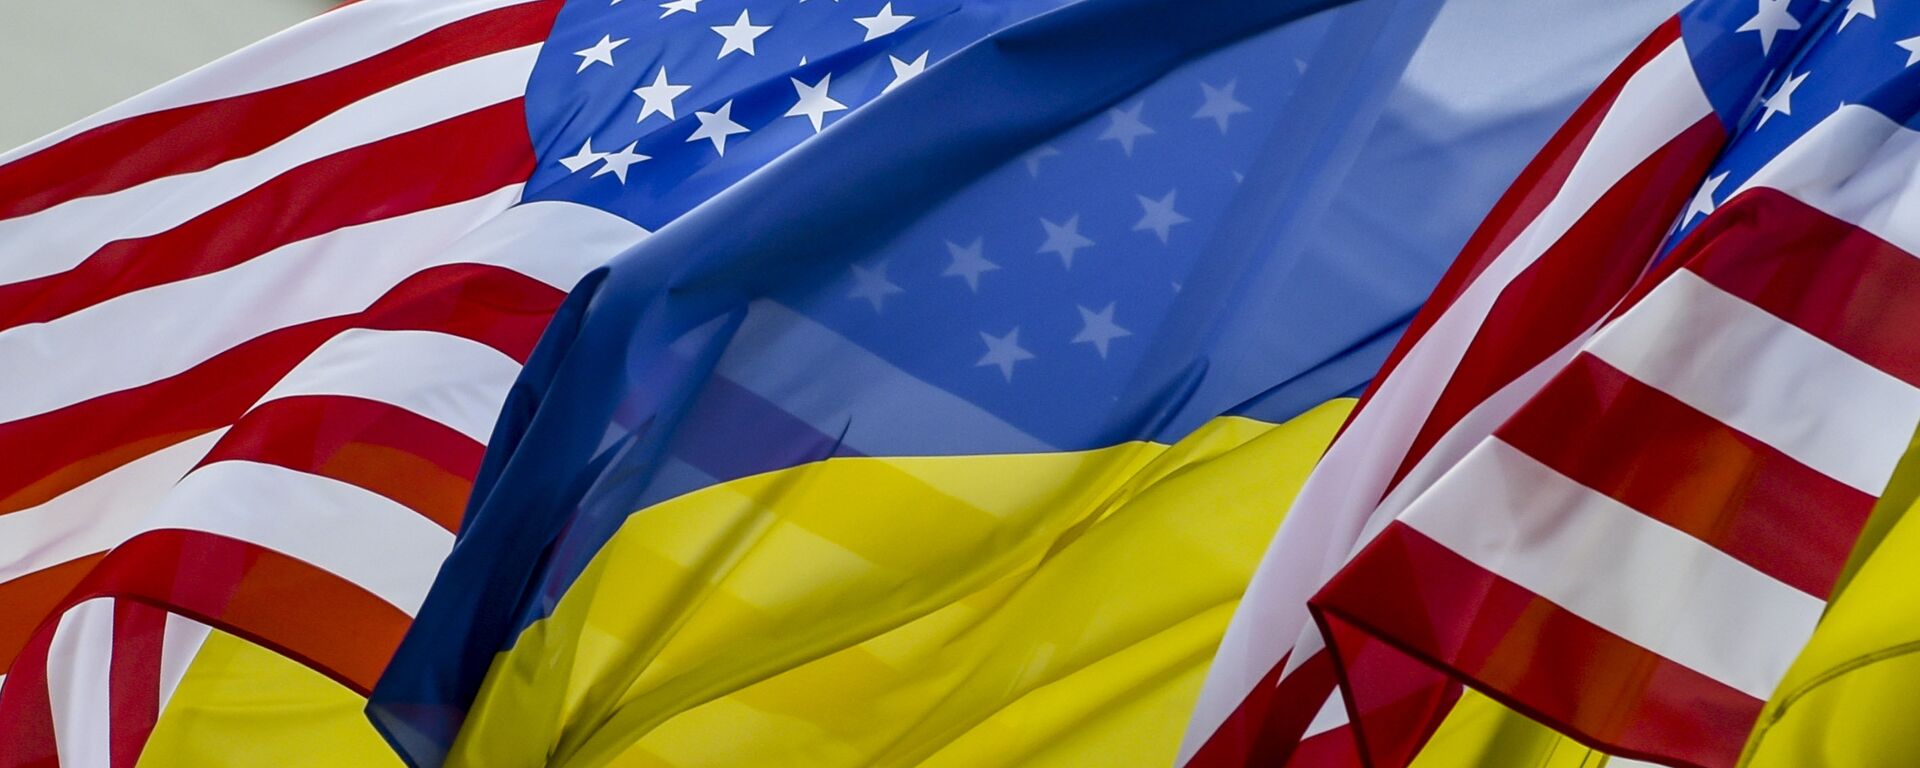 Флаги США и Украины - Sputnik Узбекистан, 1920, 08.06.2021